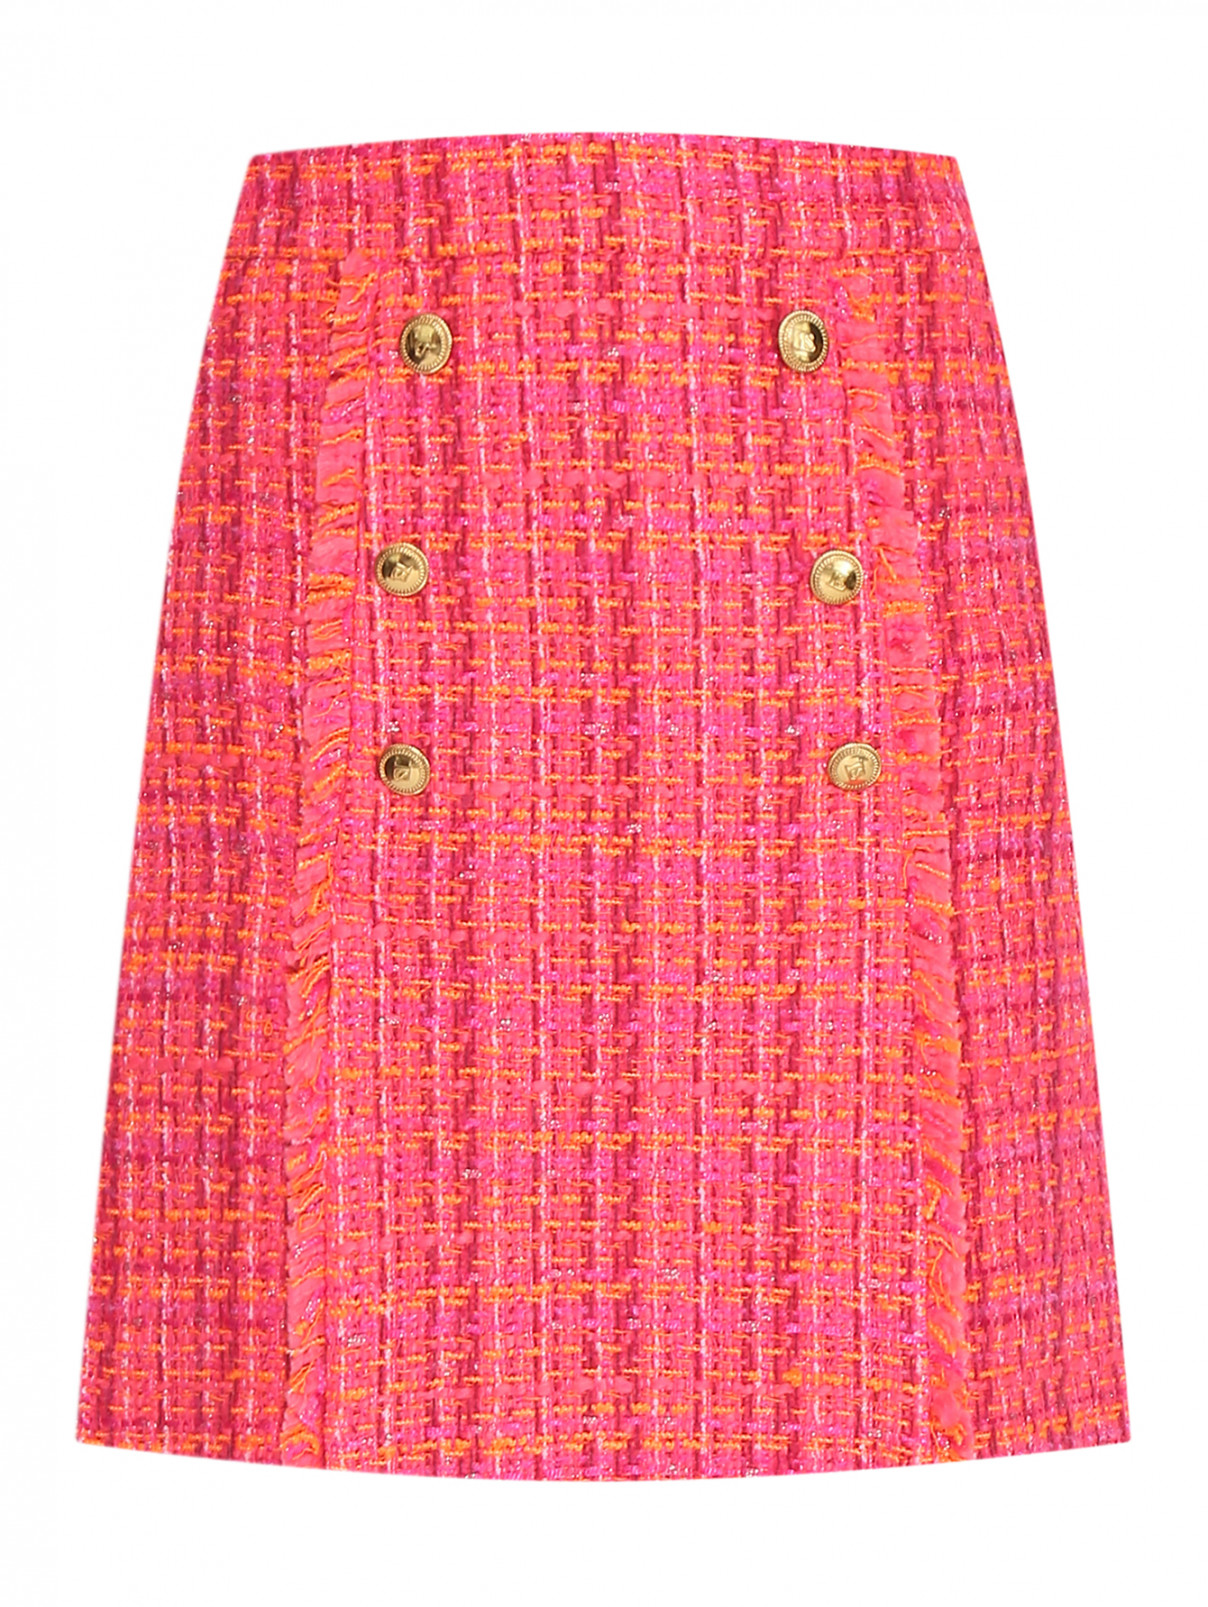 Мини-юбка из твида Luisa Spagnoli  –  Общий вид  – Цвет:  Розовый